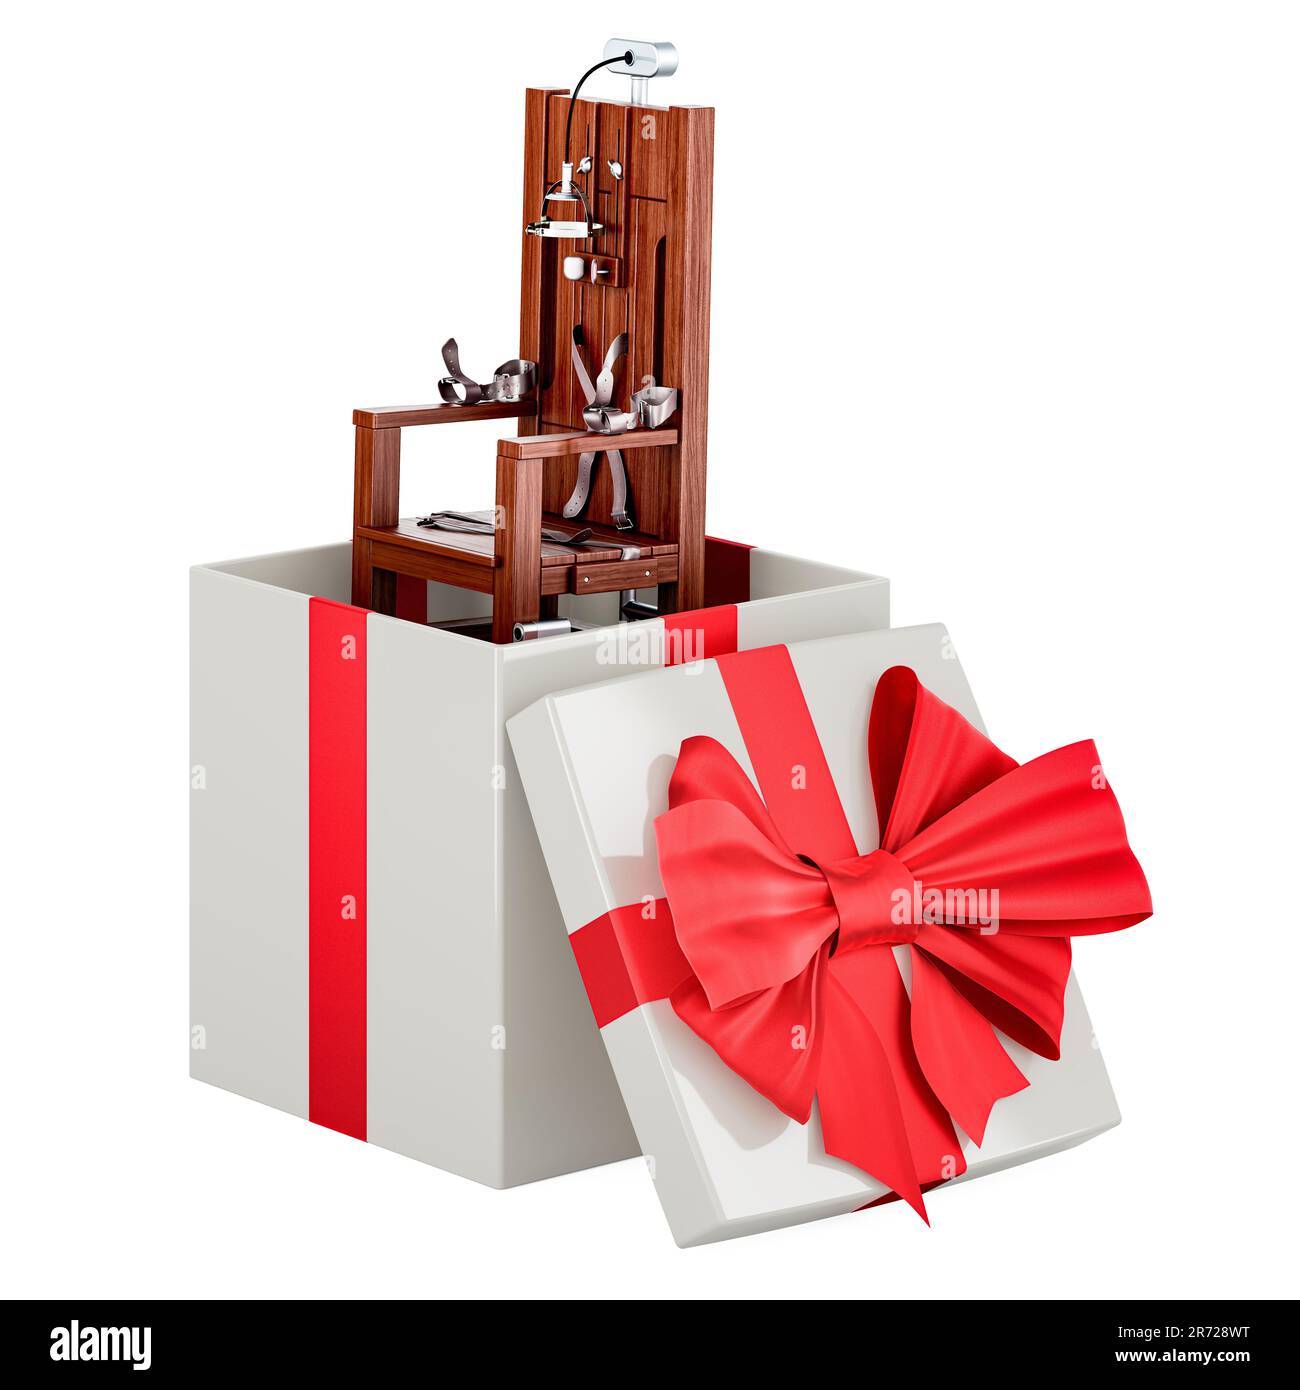 Sedia elettrica all'interno della confezione regalo, 3D rendering isolato su sfondo bianco Foto Stock